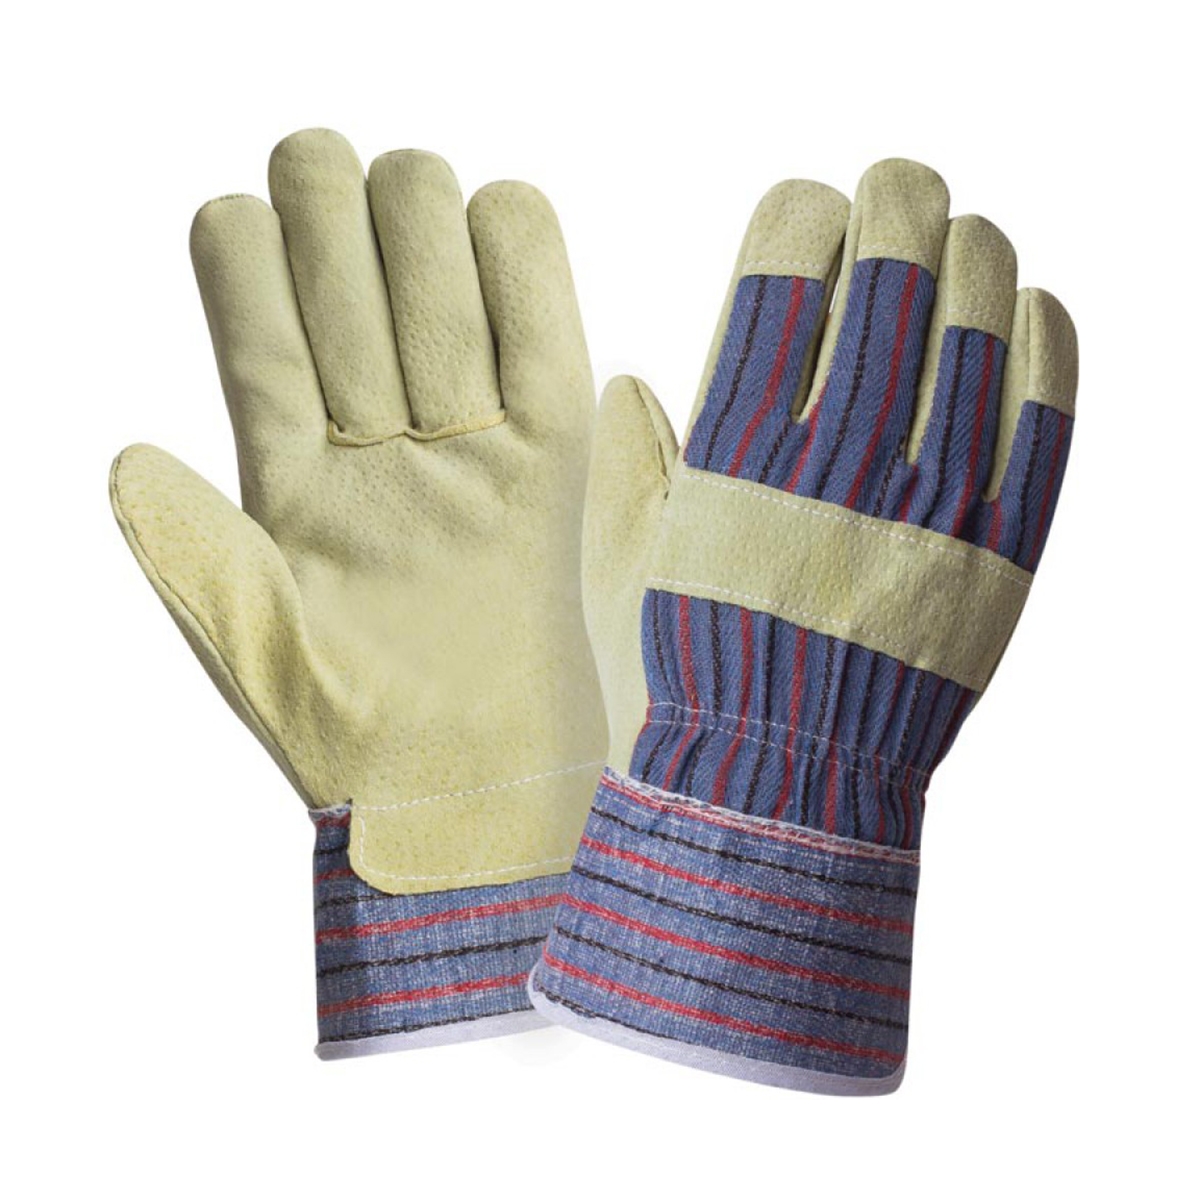 Перчатки спилковые комбинированные ПТК ЛЕОН 25761, размер 9, 1 пара спилковые комбинированные перчатки optima